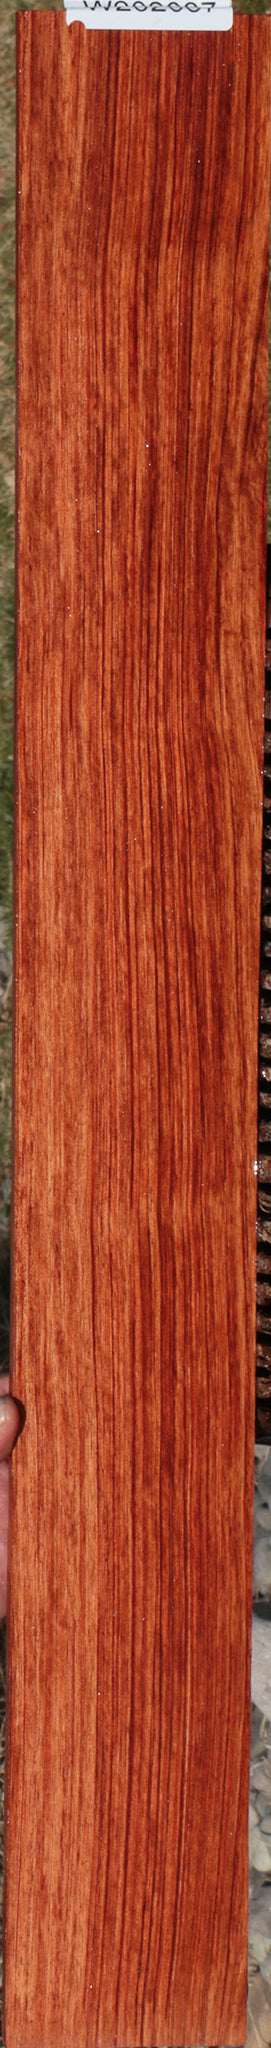 Zambian Rosewood Micro Lumber